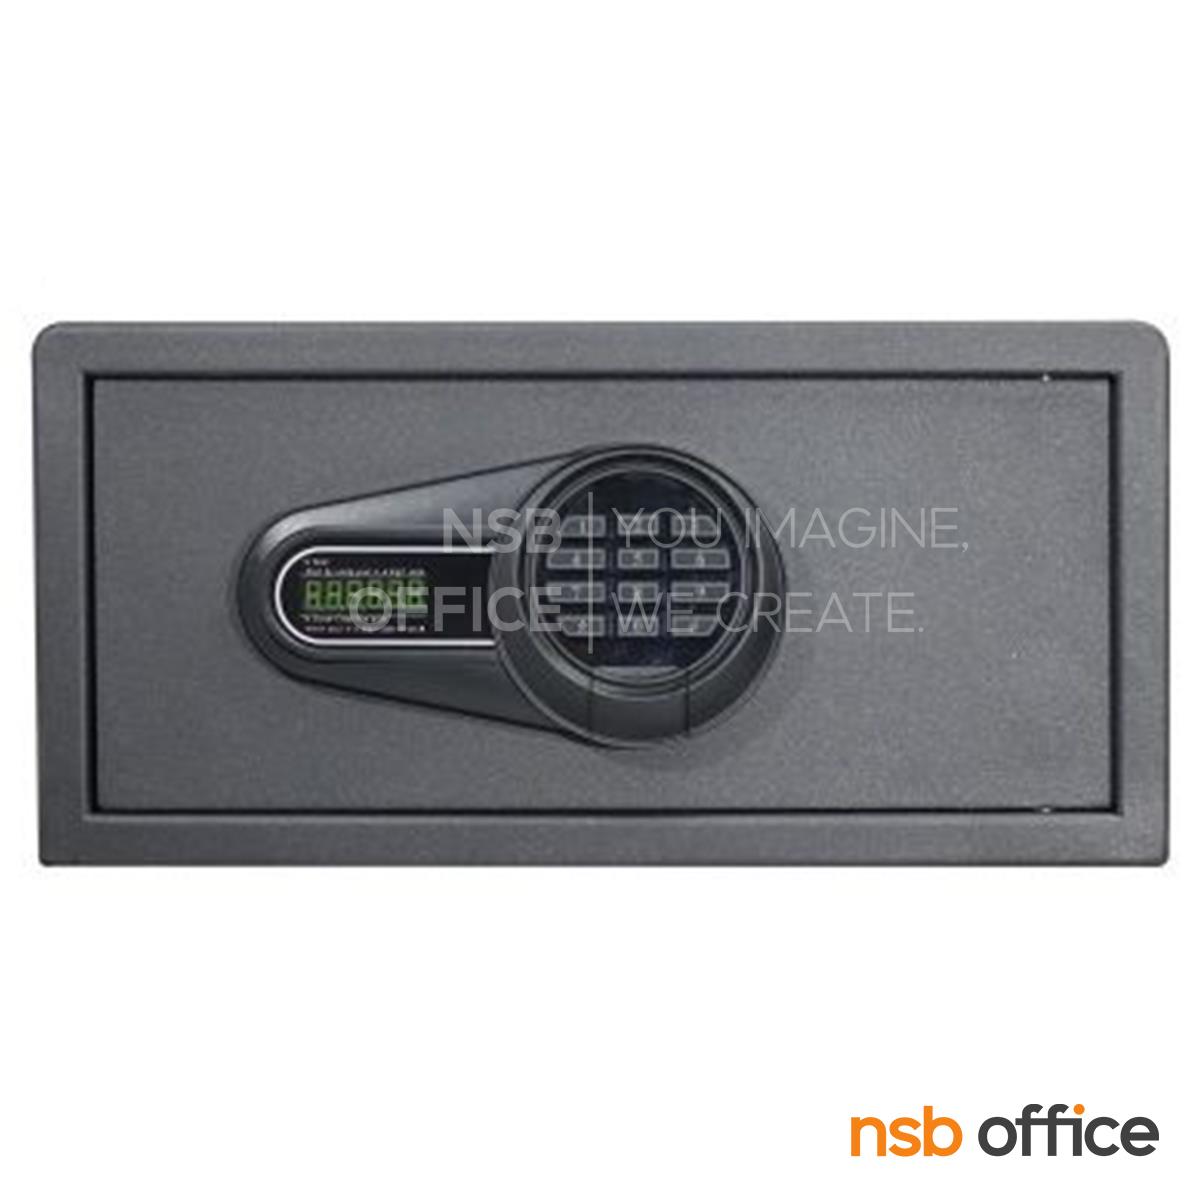 ตู้เซฟดิจิตอล มี 2 กุญแจ 2 รหัส (ใช้กดหน้าตู้) รุ่น ES-950  ขนาด 42W*37D* 20H cm. 